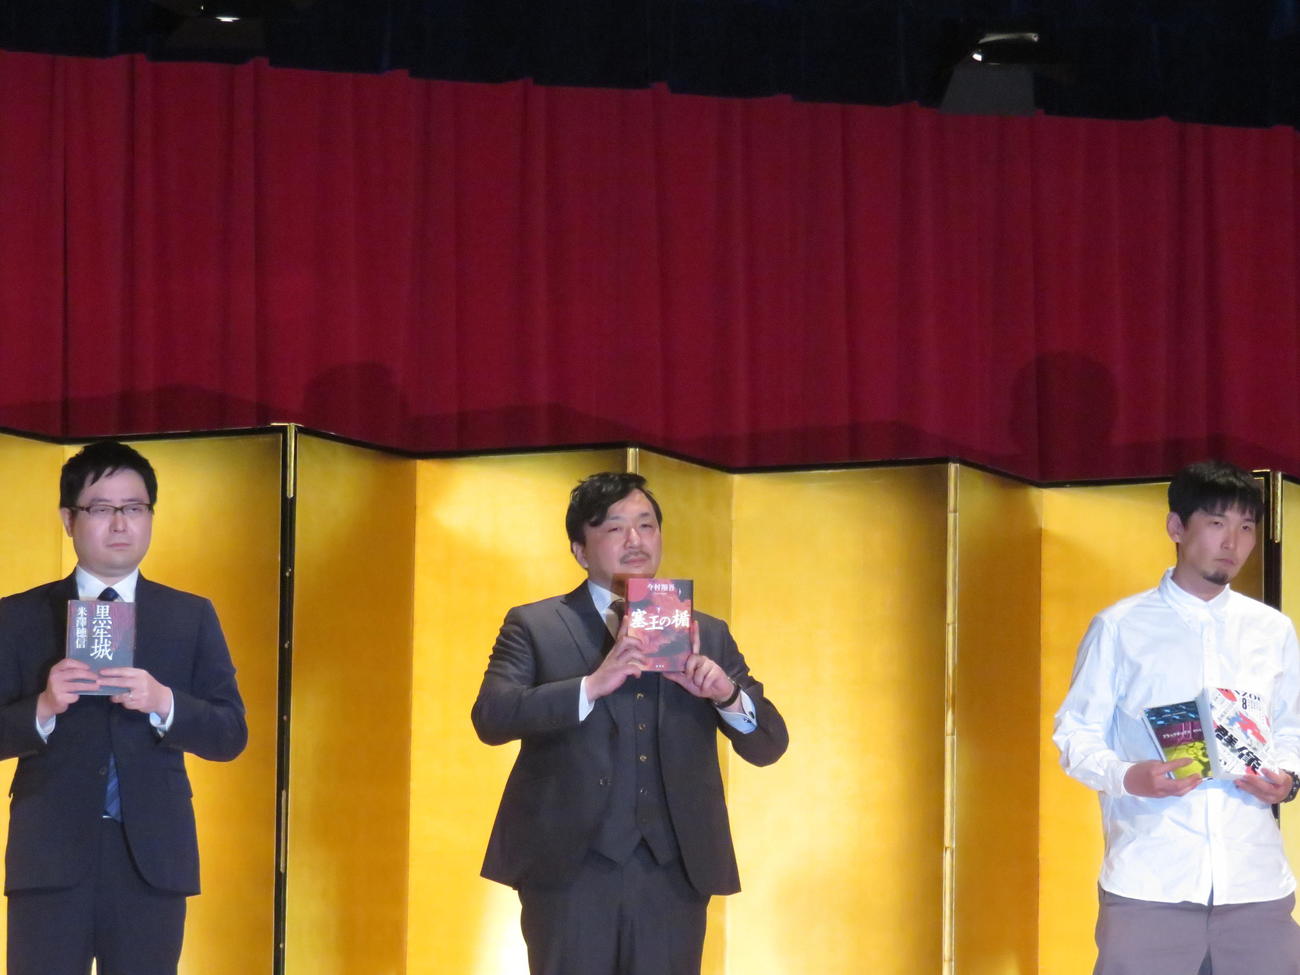 左から米沢穂信さん、今村翔吾さん、砂川文次さん。砂川さんは初の素顔公開になる